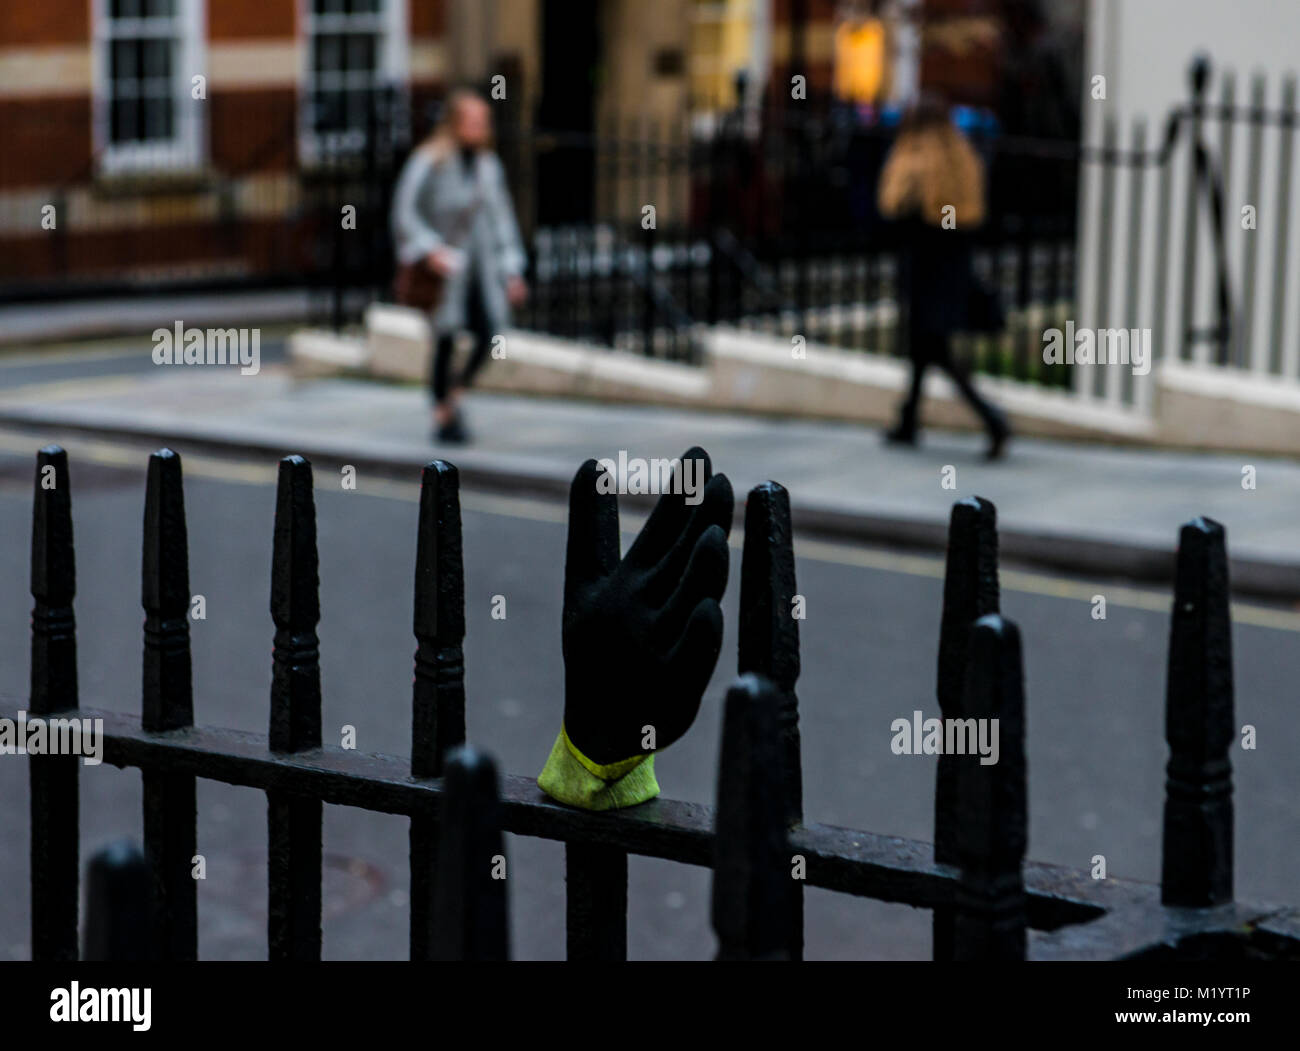 Gant perdu sur clôture métallique rambarde, Londres, Angleterre Banque D'Images